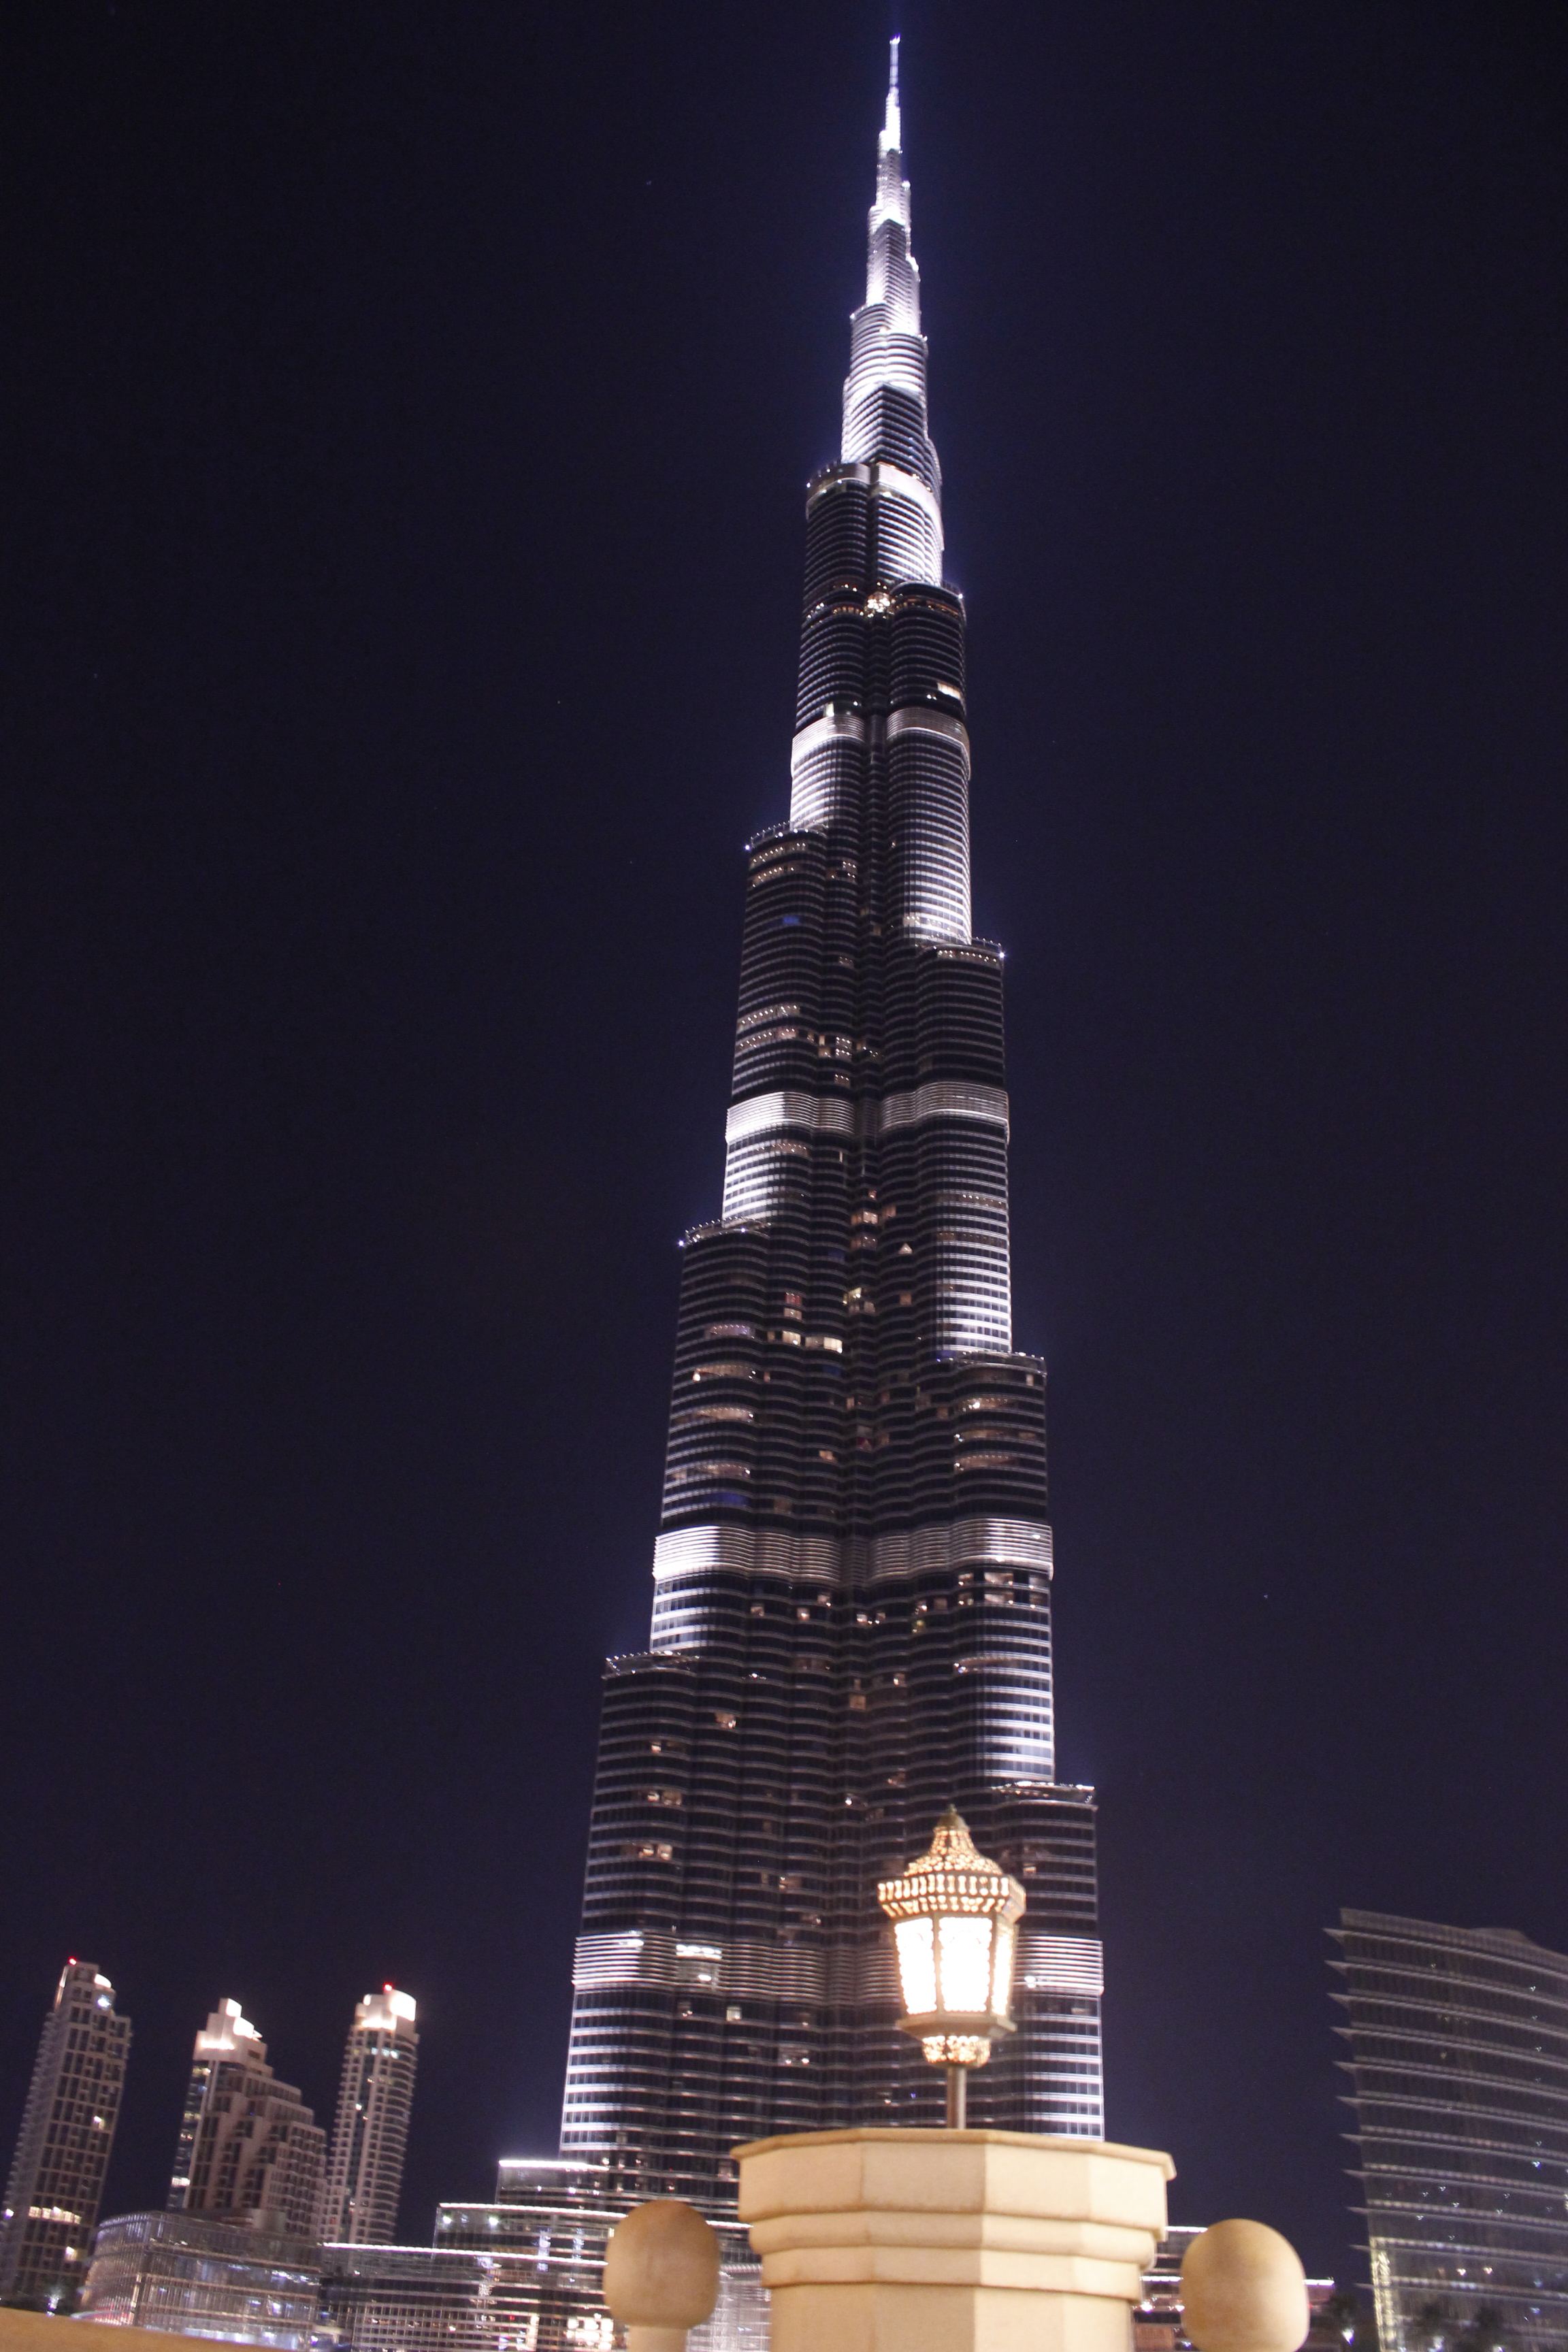 这座塔,被称为世界第一高楼